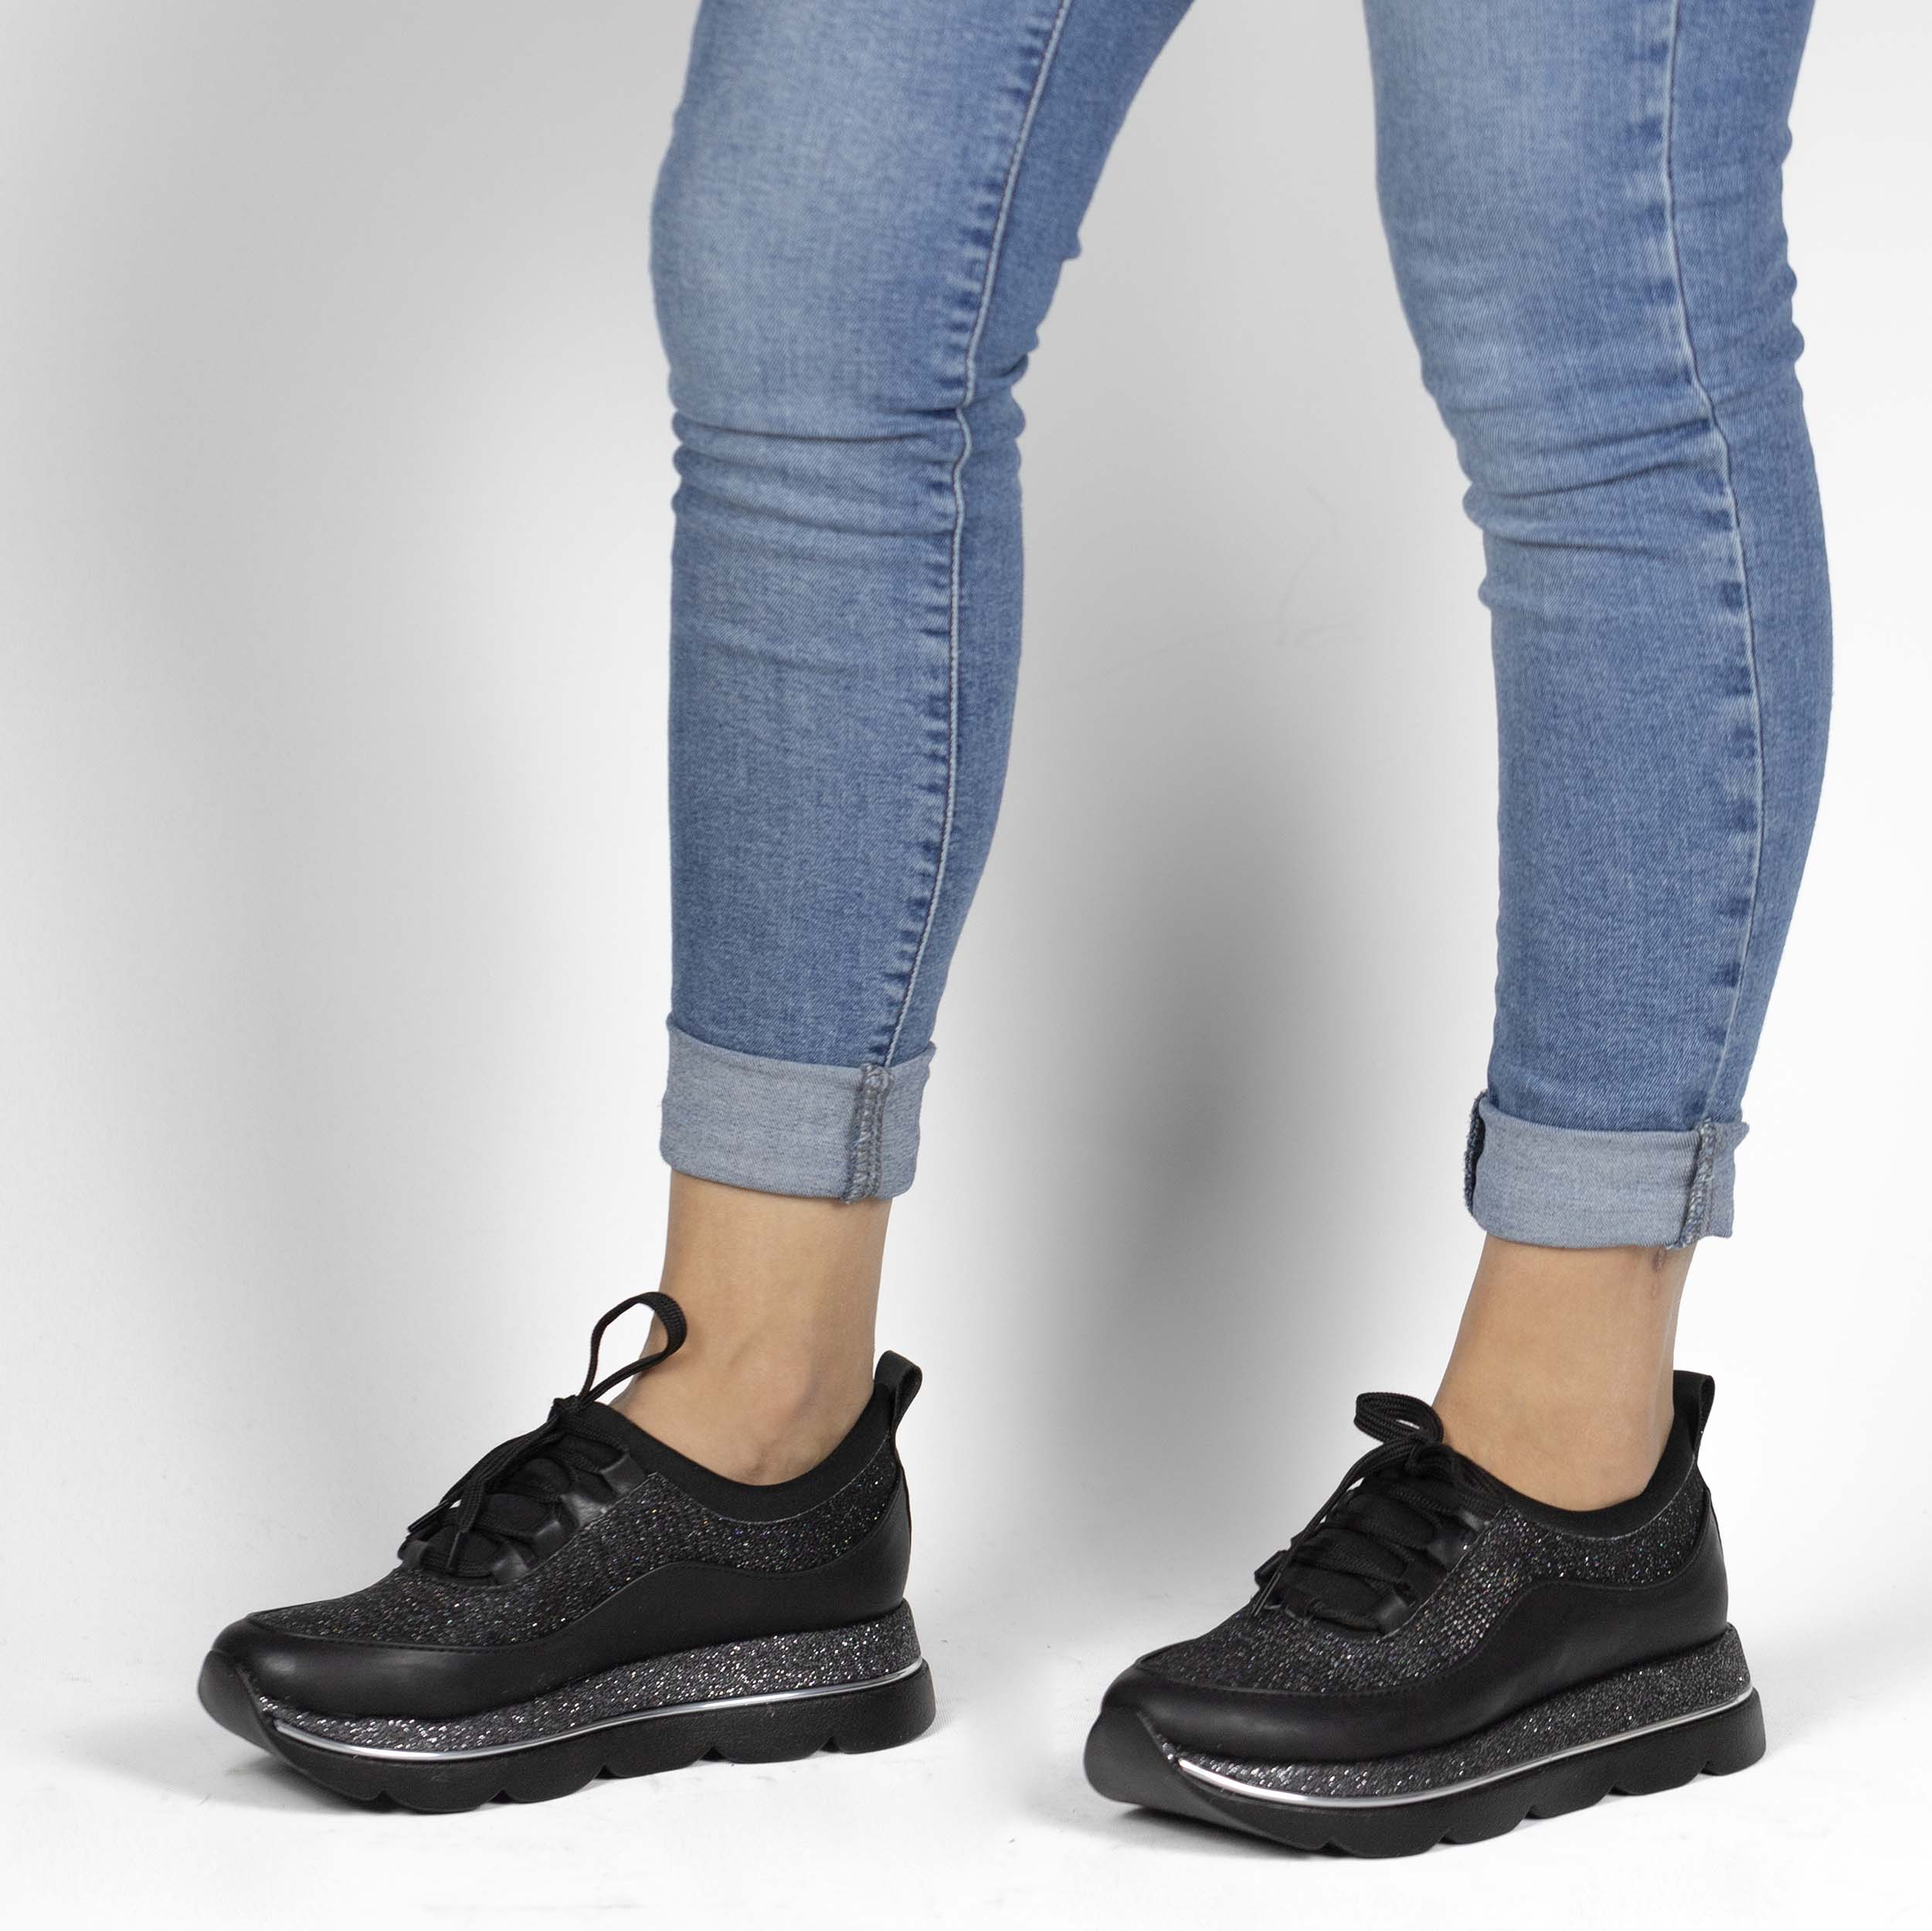 Kadın Günlük Siyah Kalın Yüksek Tabanlı 4 cm Simli Spor Ayakkabı, Renk: Siyah, Beden: 36